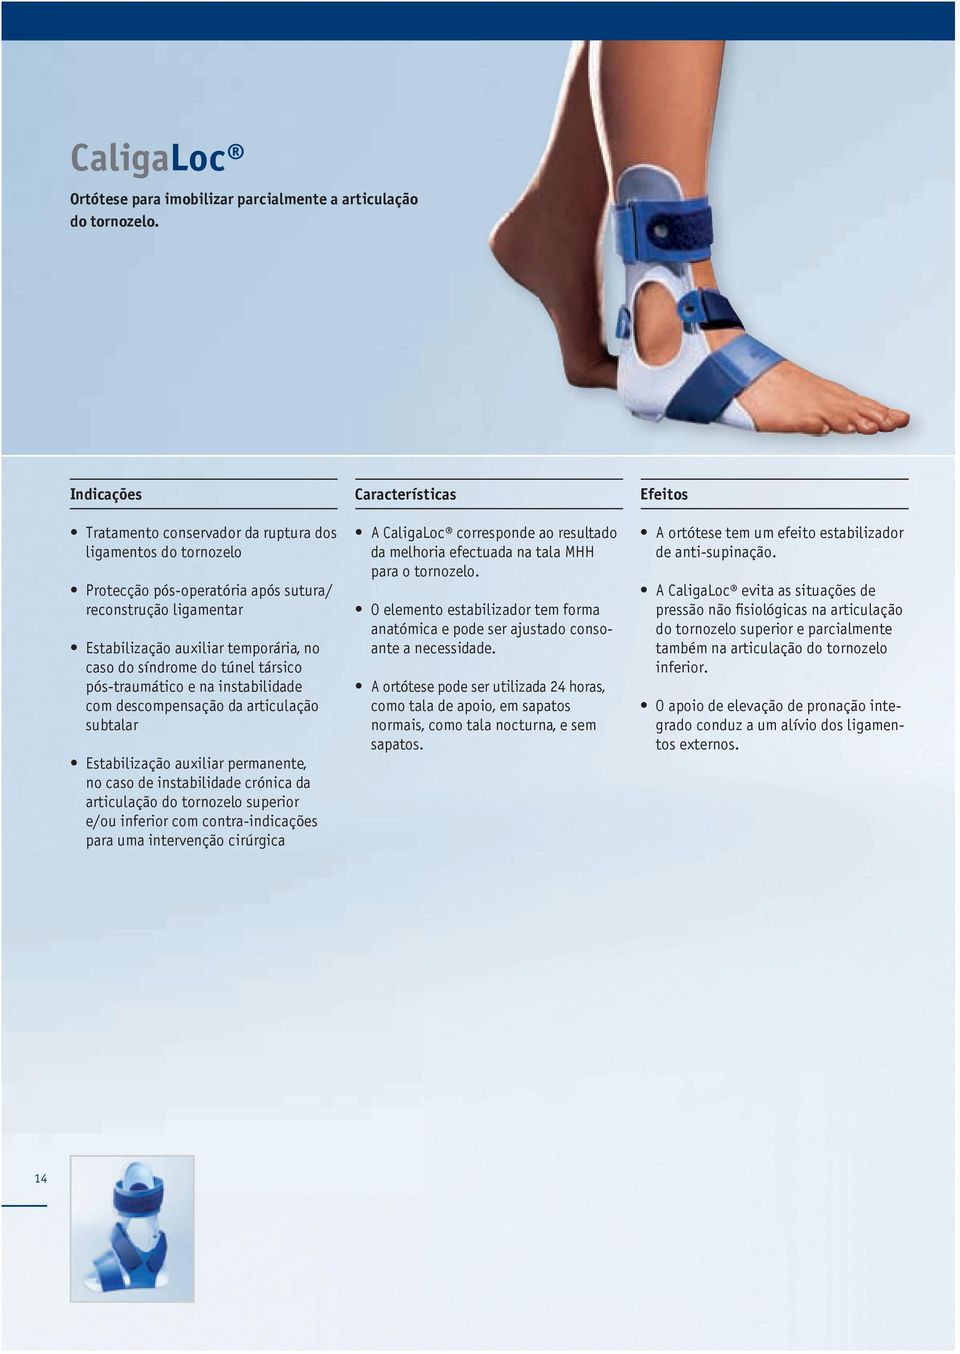 pós-traumático e na instabilidade com descompensação da articulação subtalar Estabilização auxiliar per manente, no caso de instabilidade crónica da articulação do tornozelo superior e/ou inferior